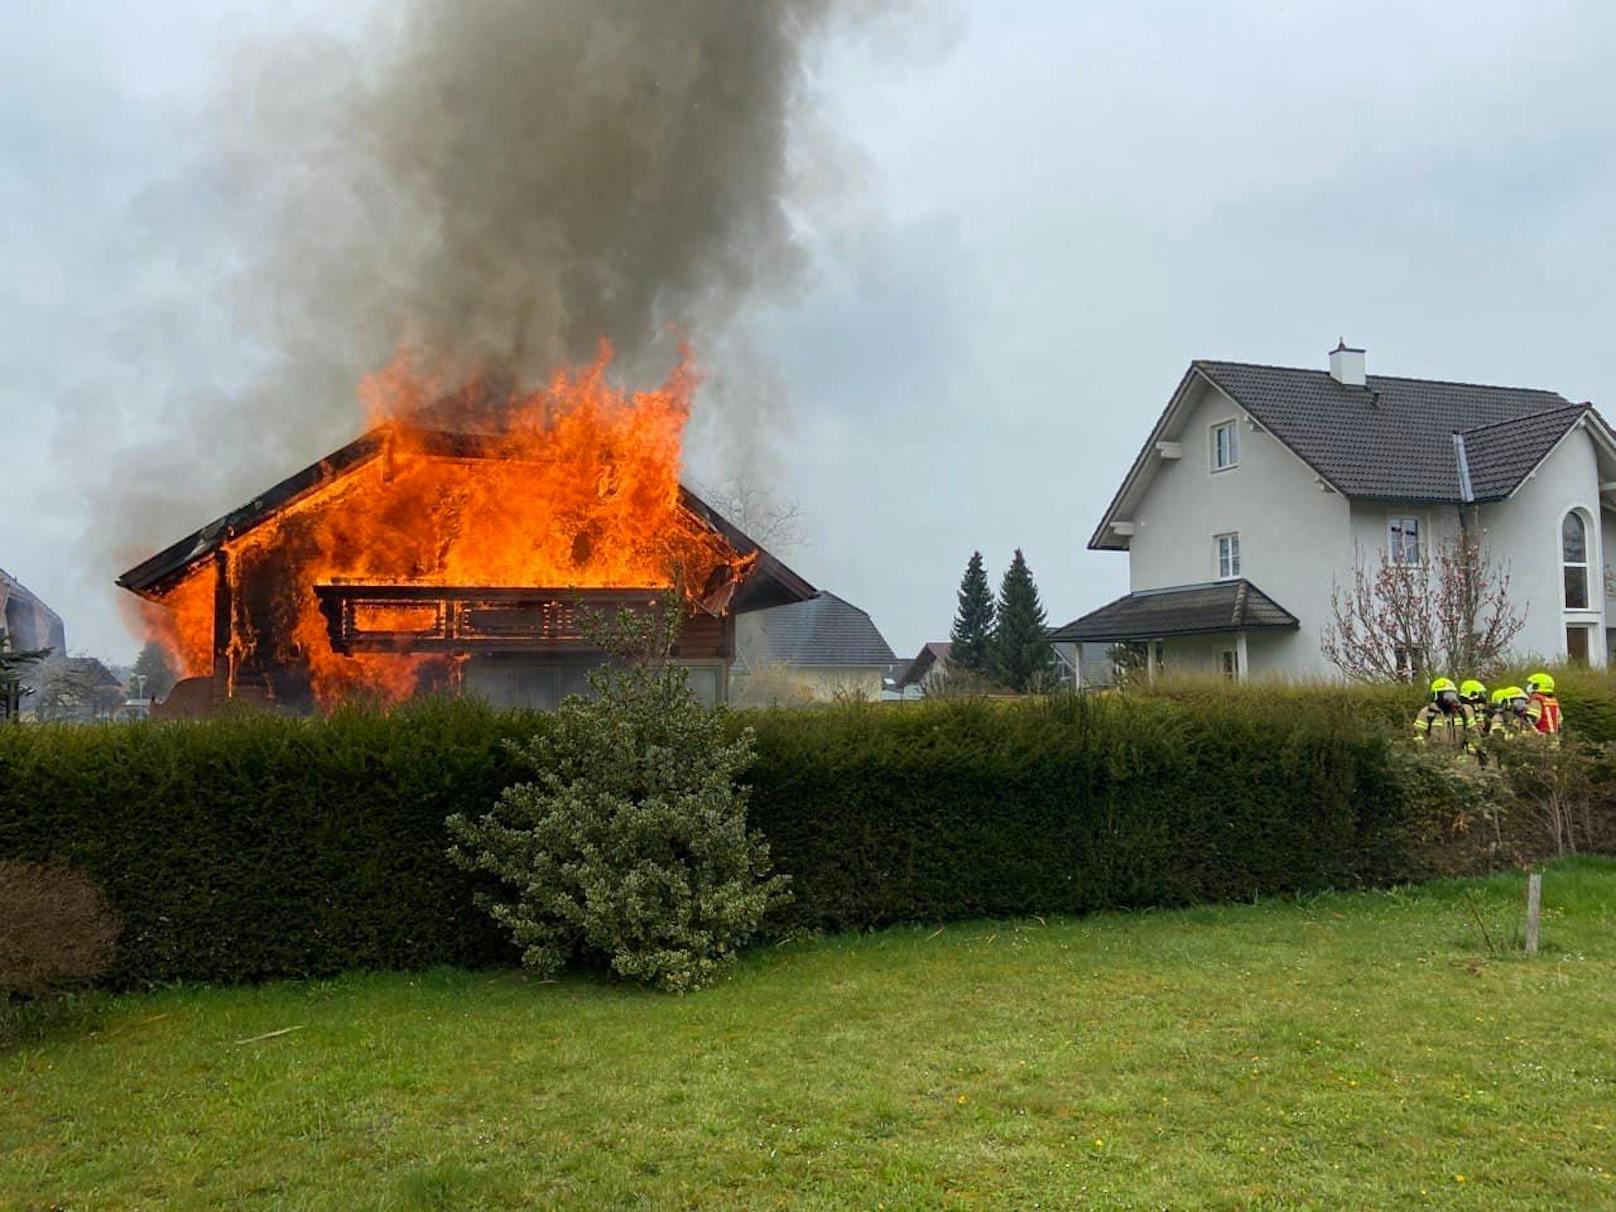 Einfamilienhaus in Flammen, Großeinsatz für Feuerwehr